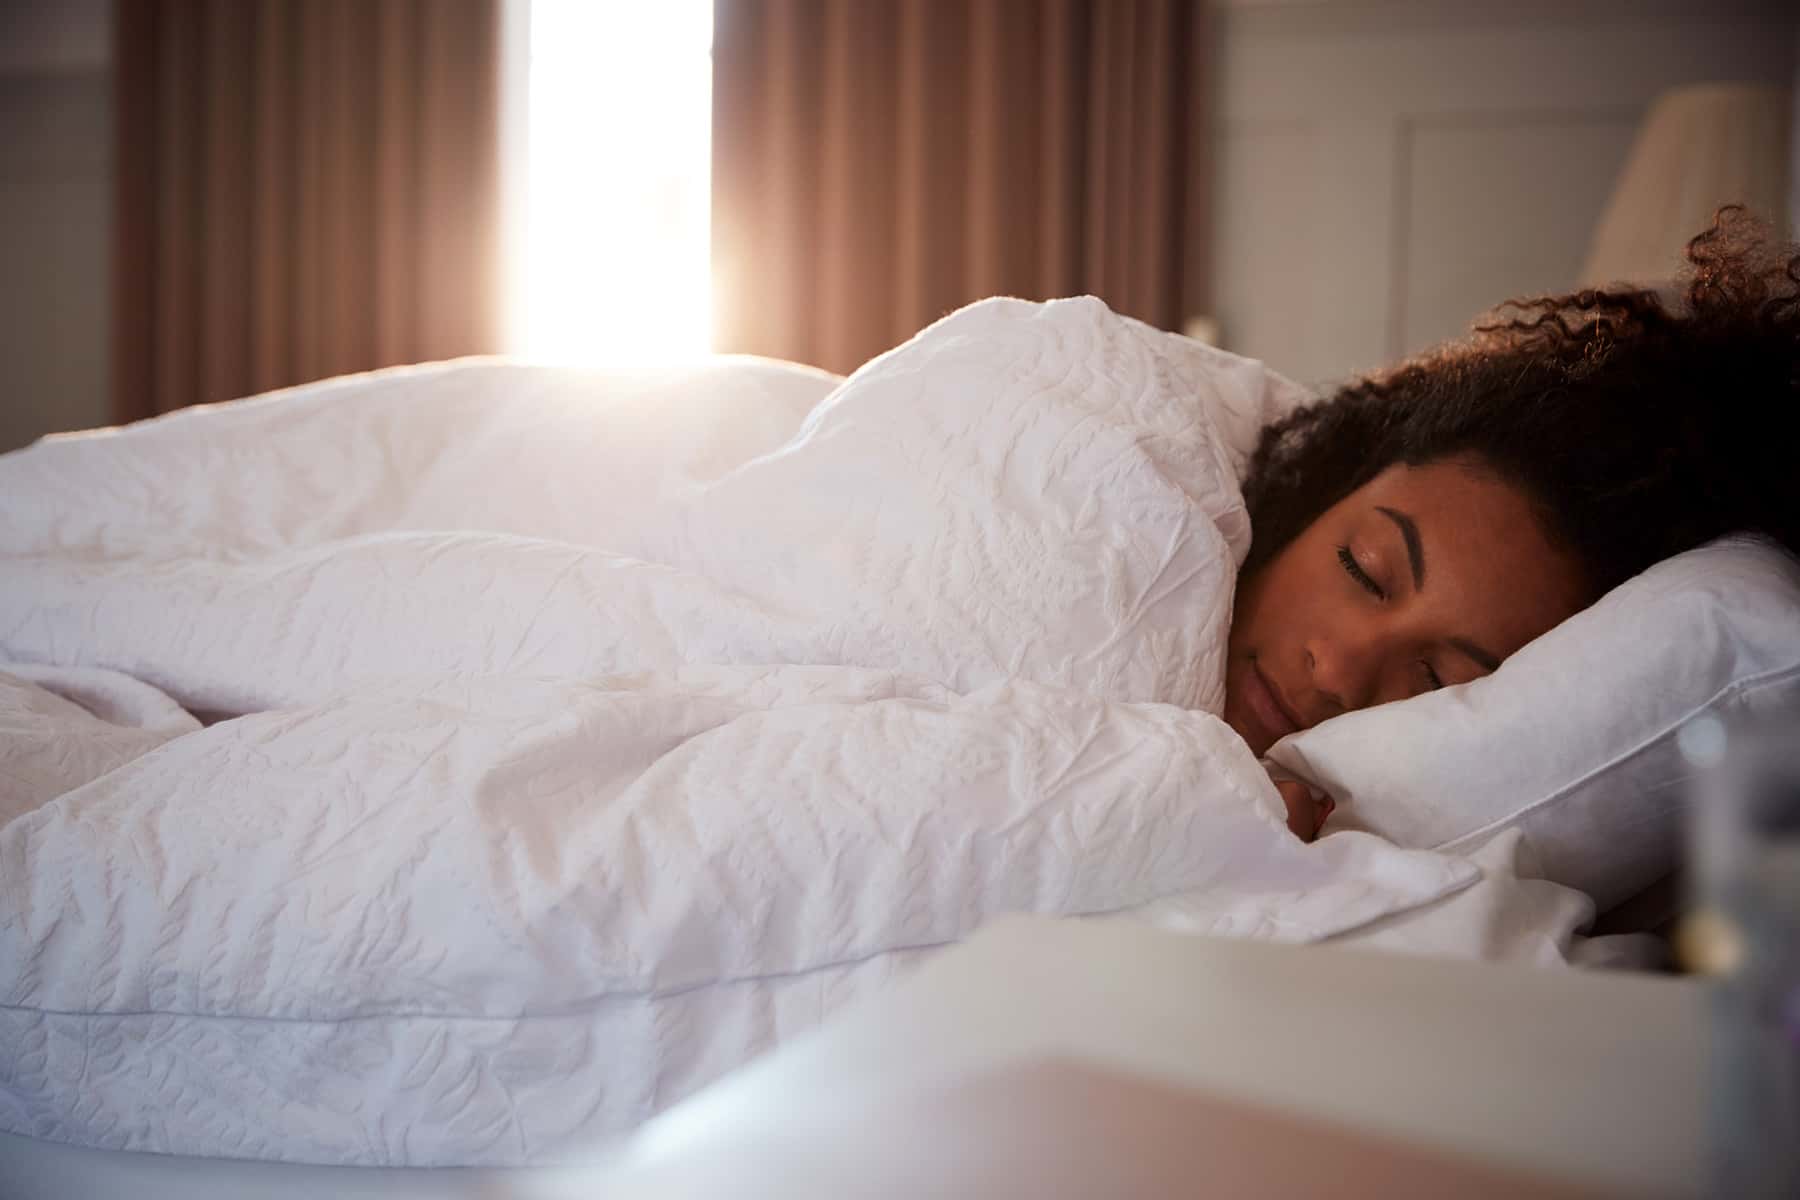 Neurologist Describes Importance of Sound Sleep